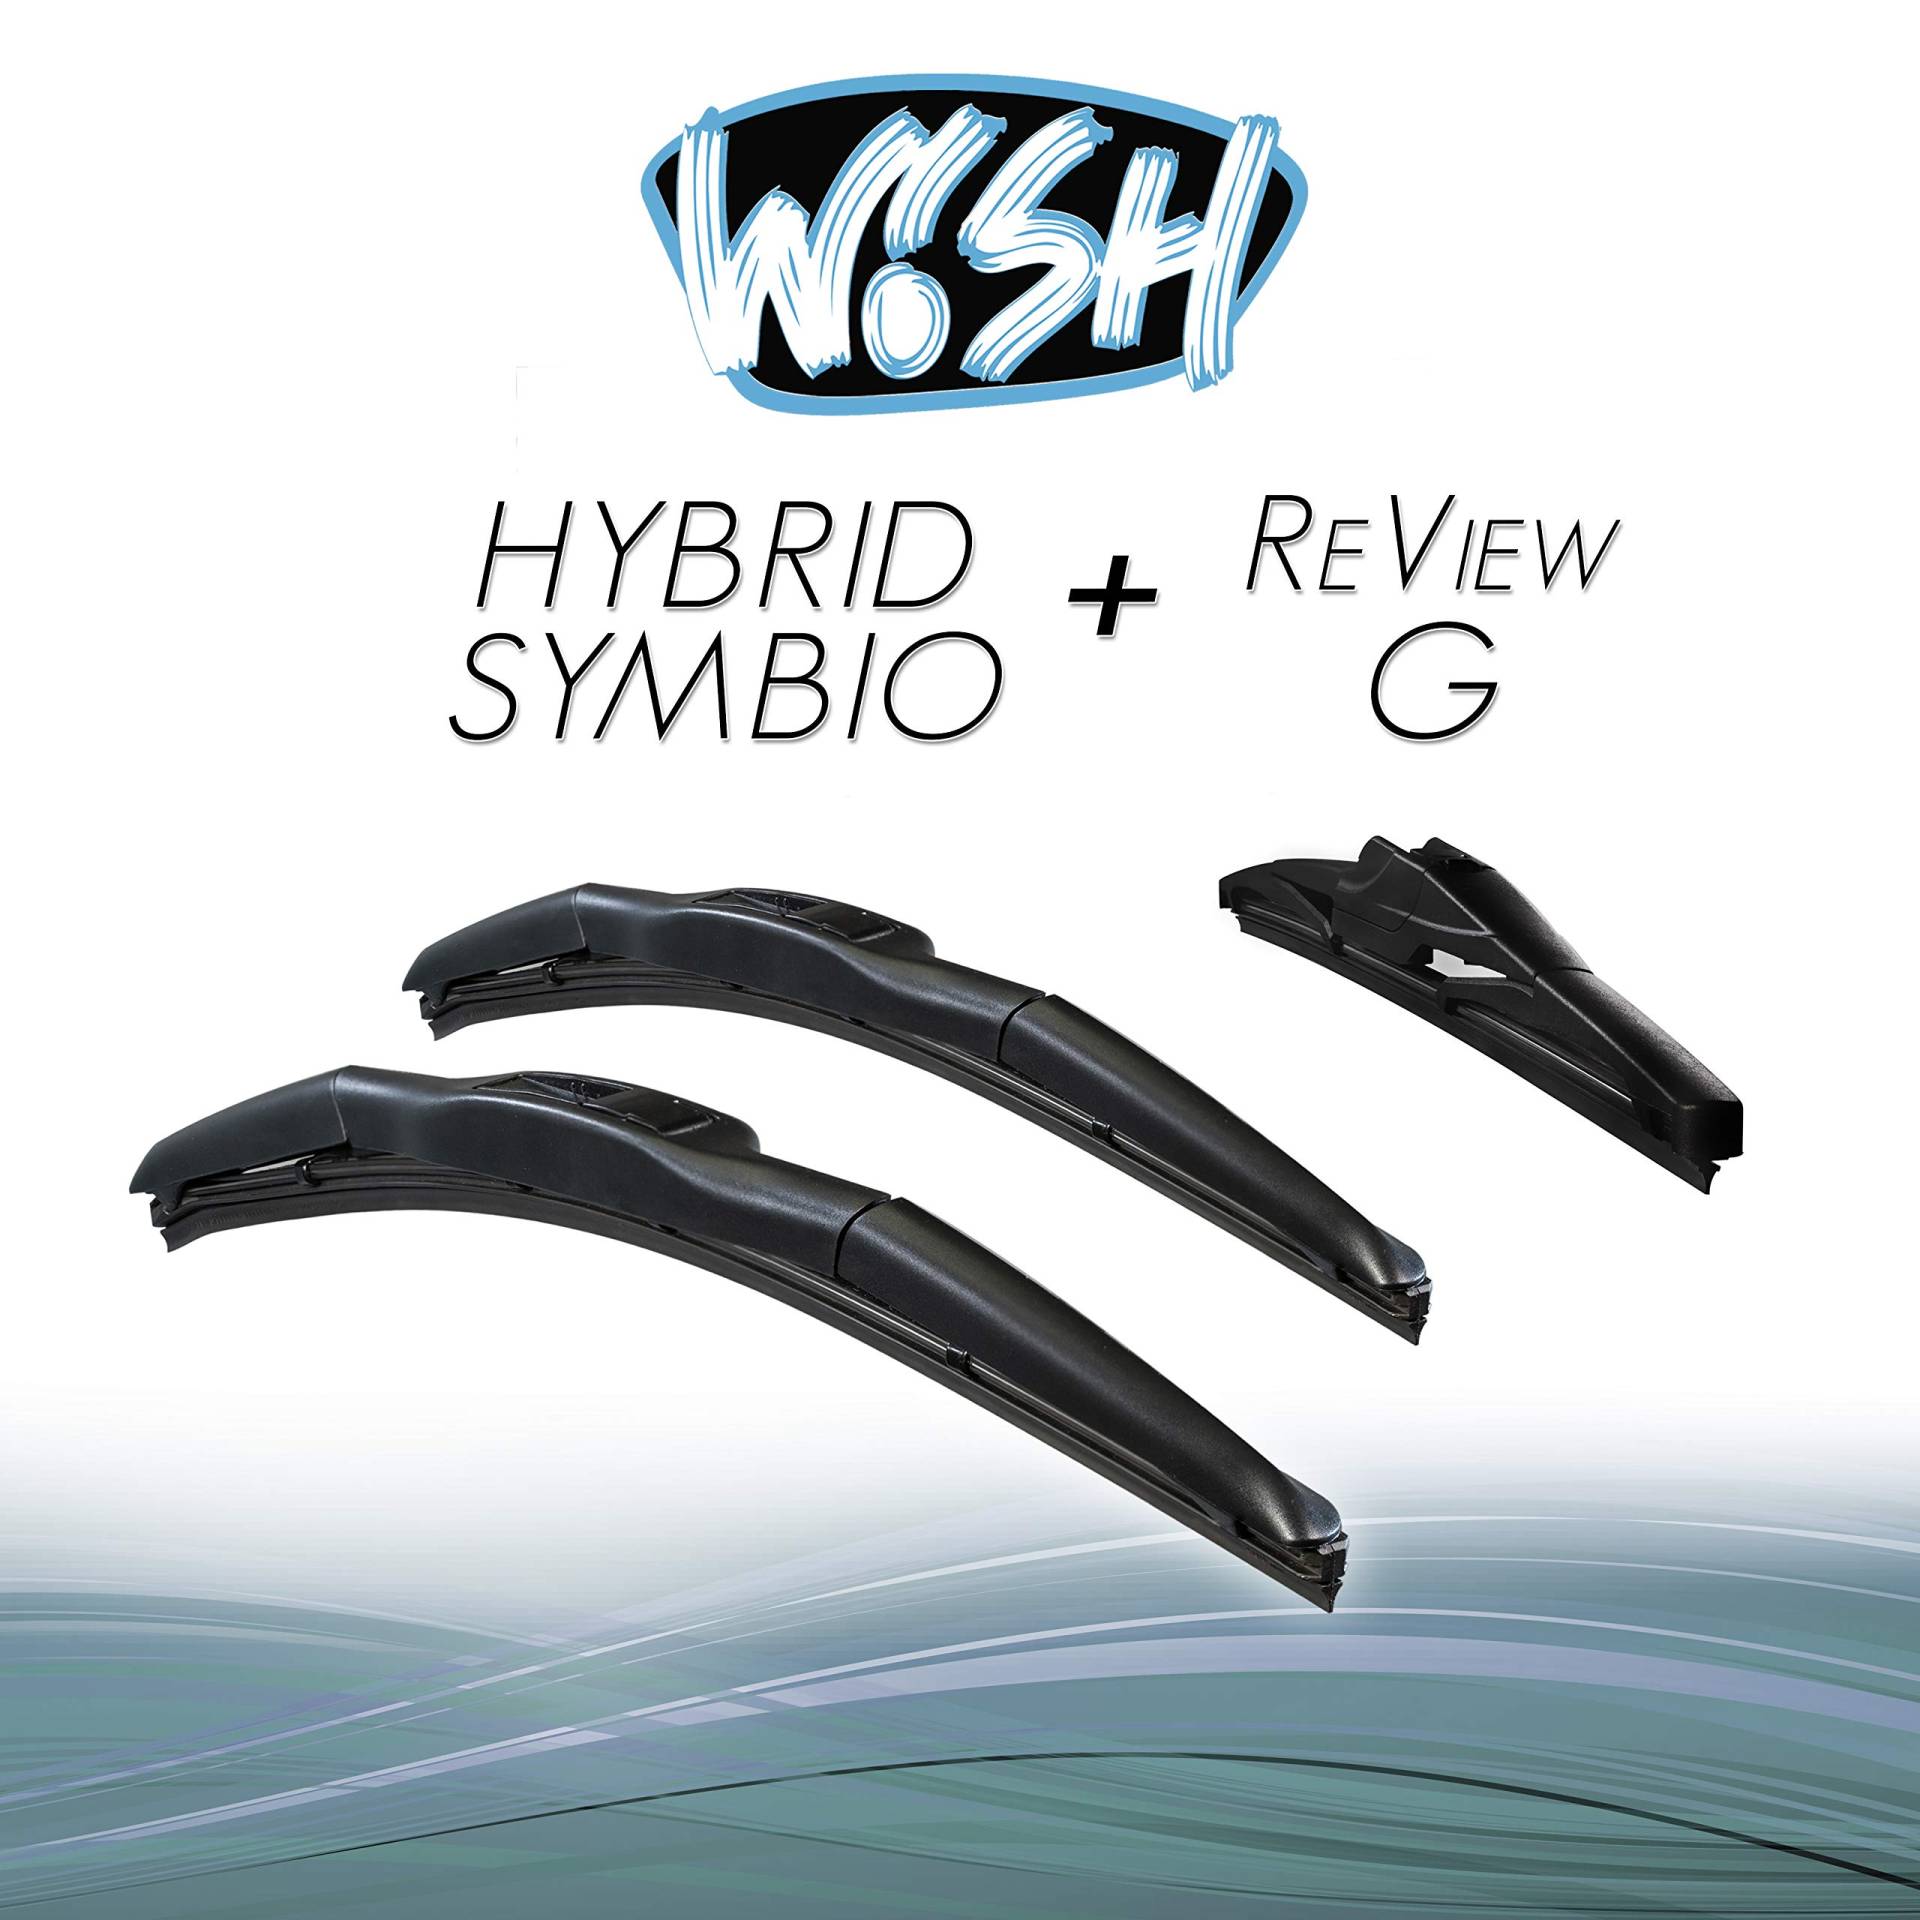 Wish® Hybrid Symbio Satz Front + Heck Scheibenwischer Länge: 21" 530mm / 15" 380mm / 12" 300mm Wischblätter Vorne und Hinten Hybrid-Scheibenwischer + Review G HS21.15.RG12 von Wish